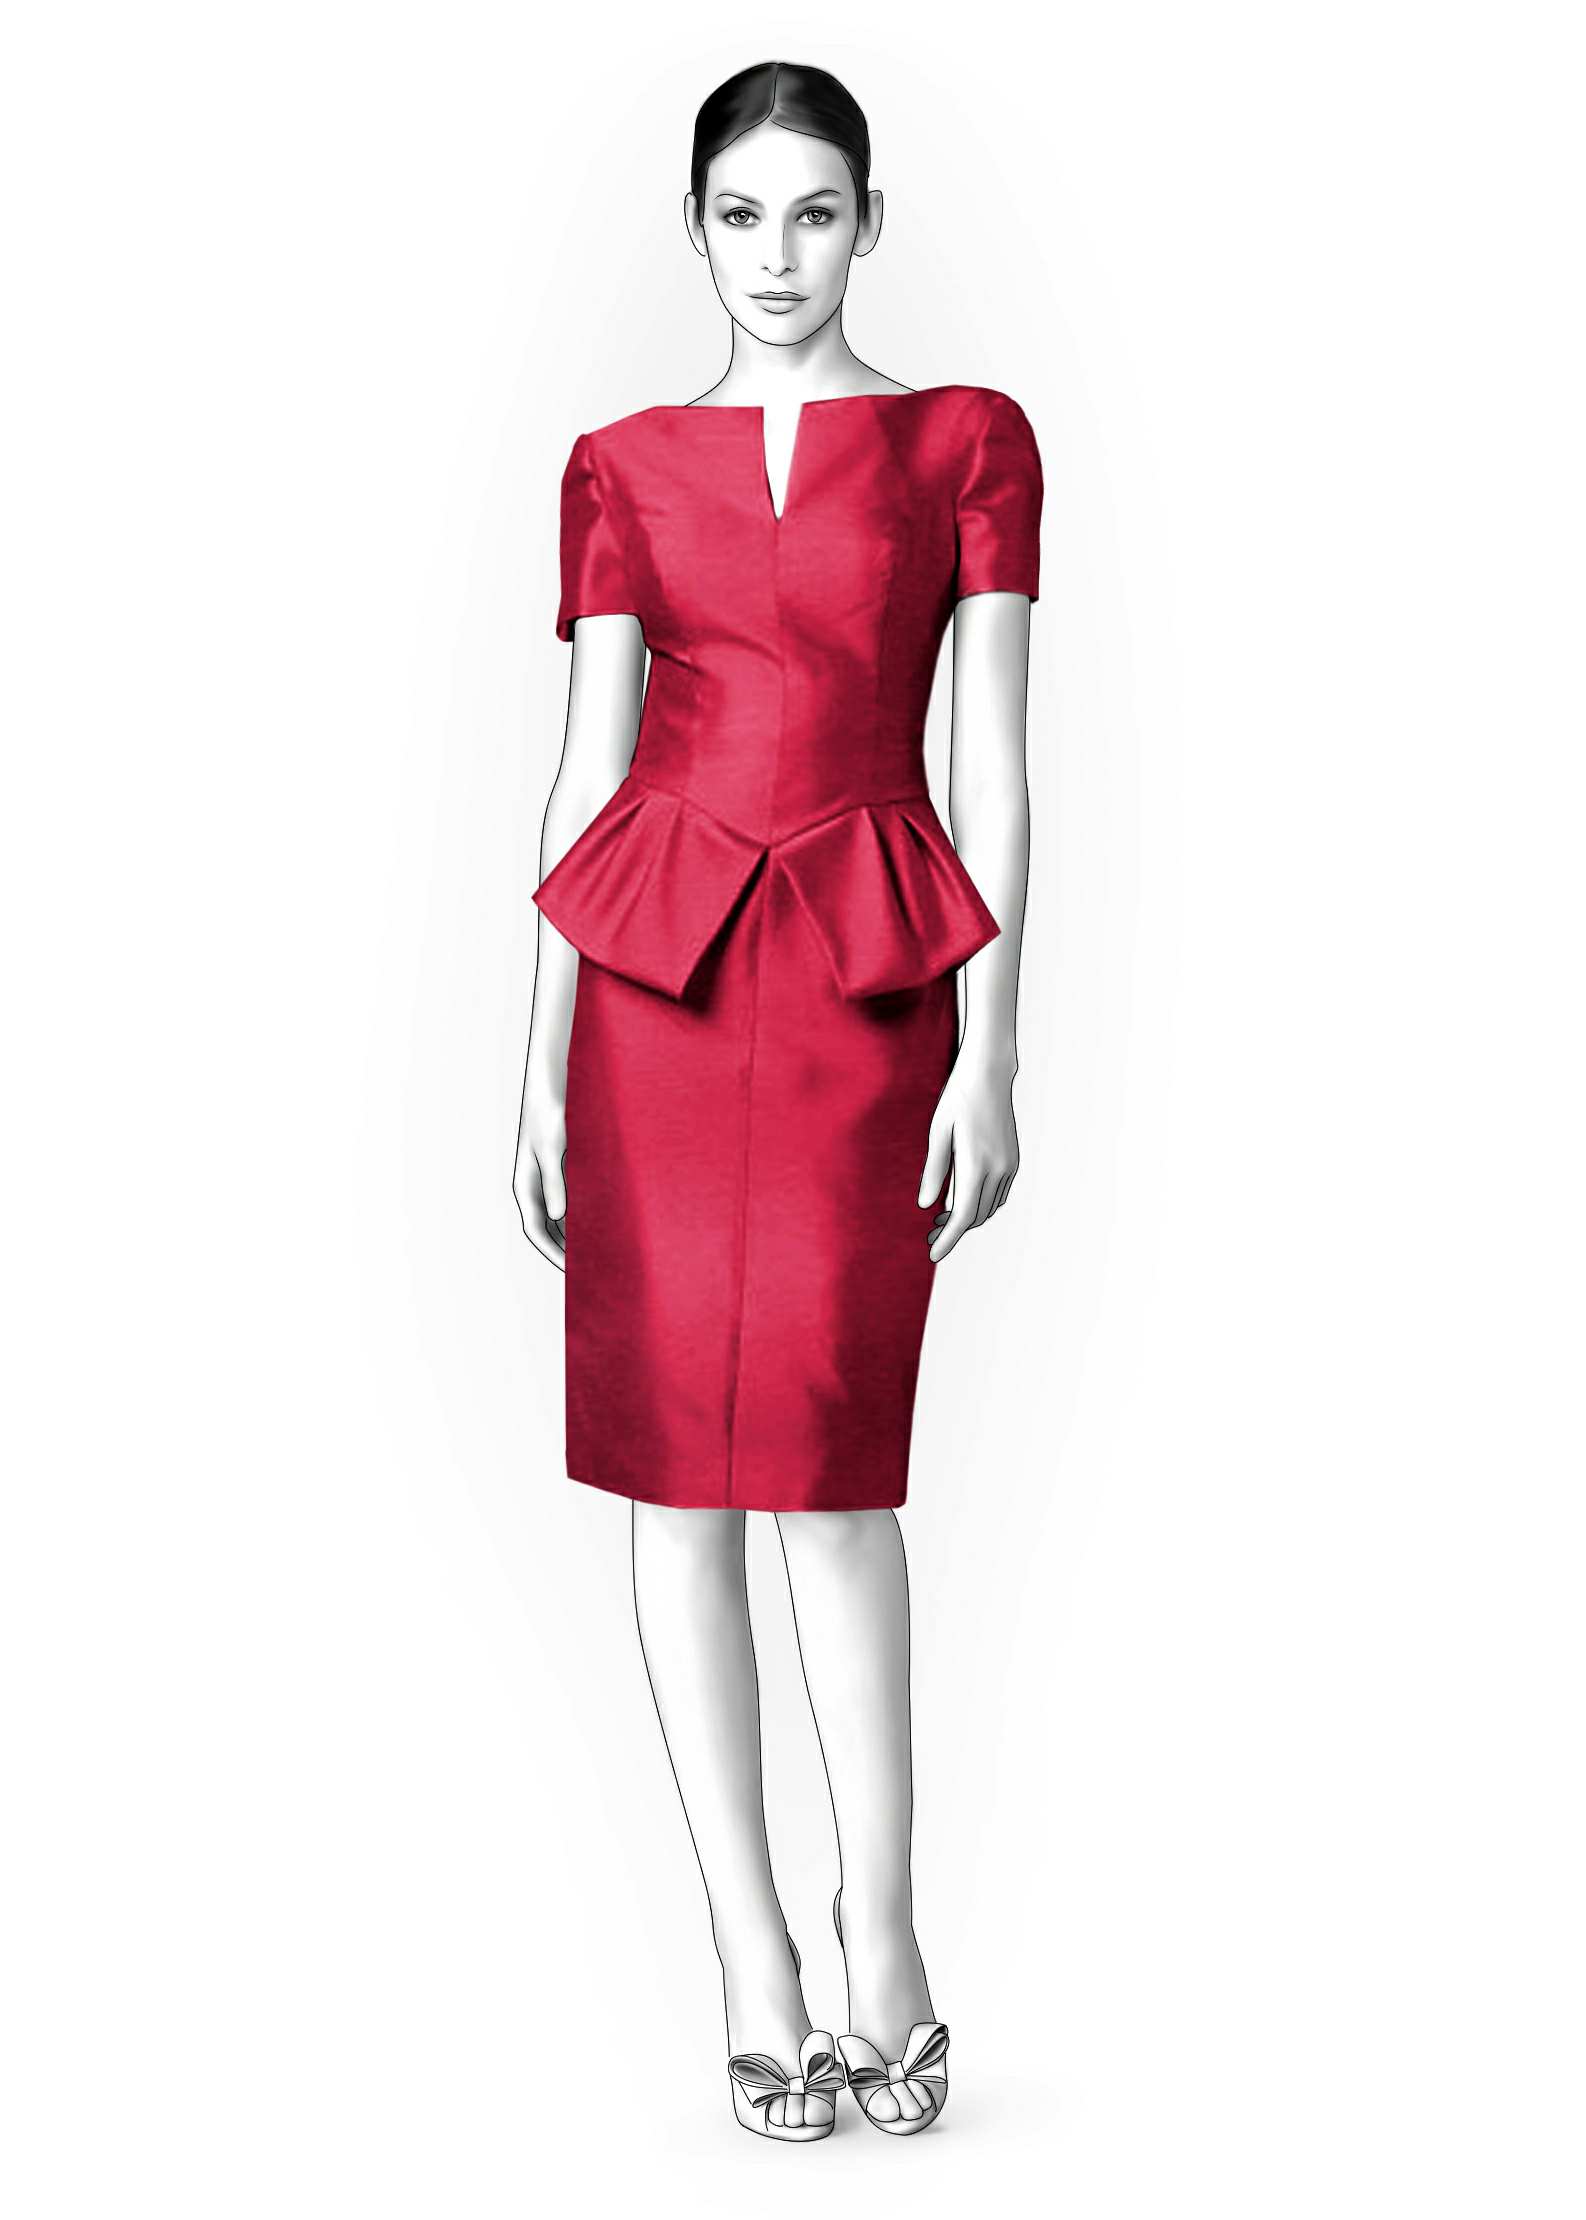 Peplum Dress Pattern | vlr.eng.br